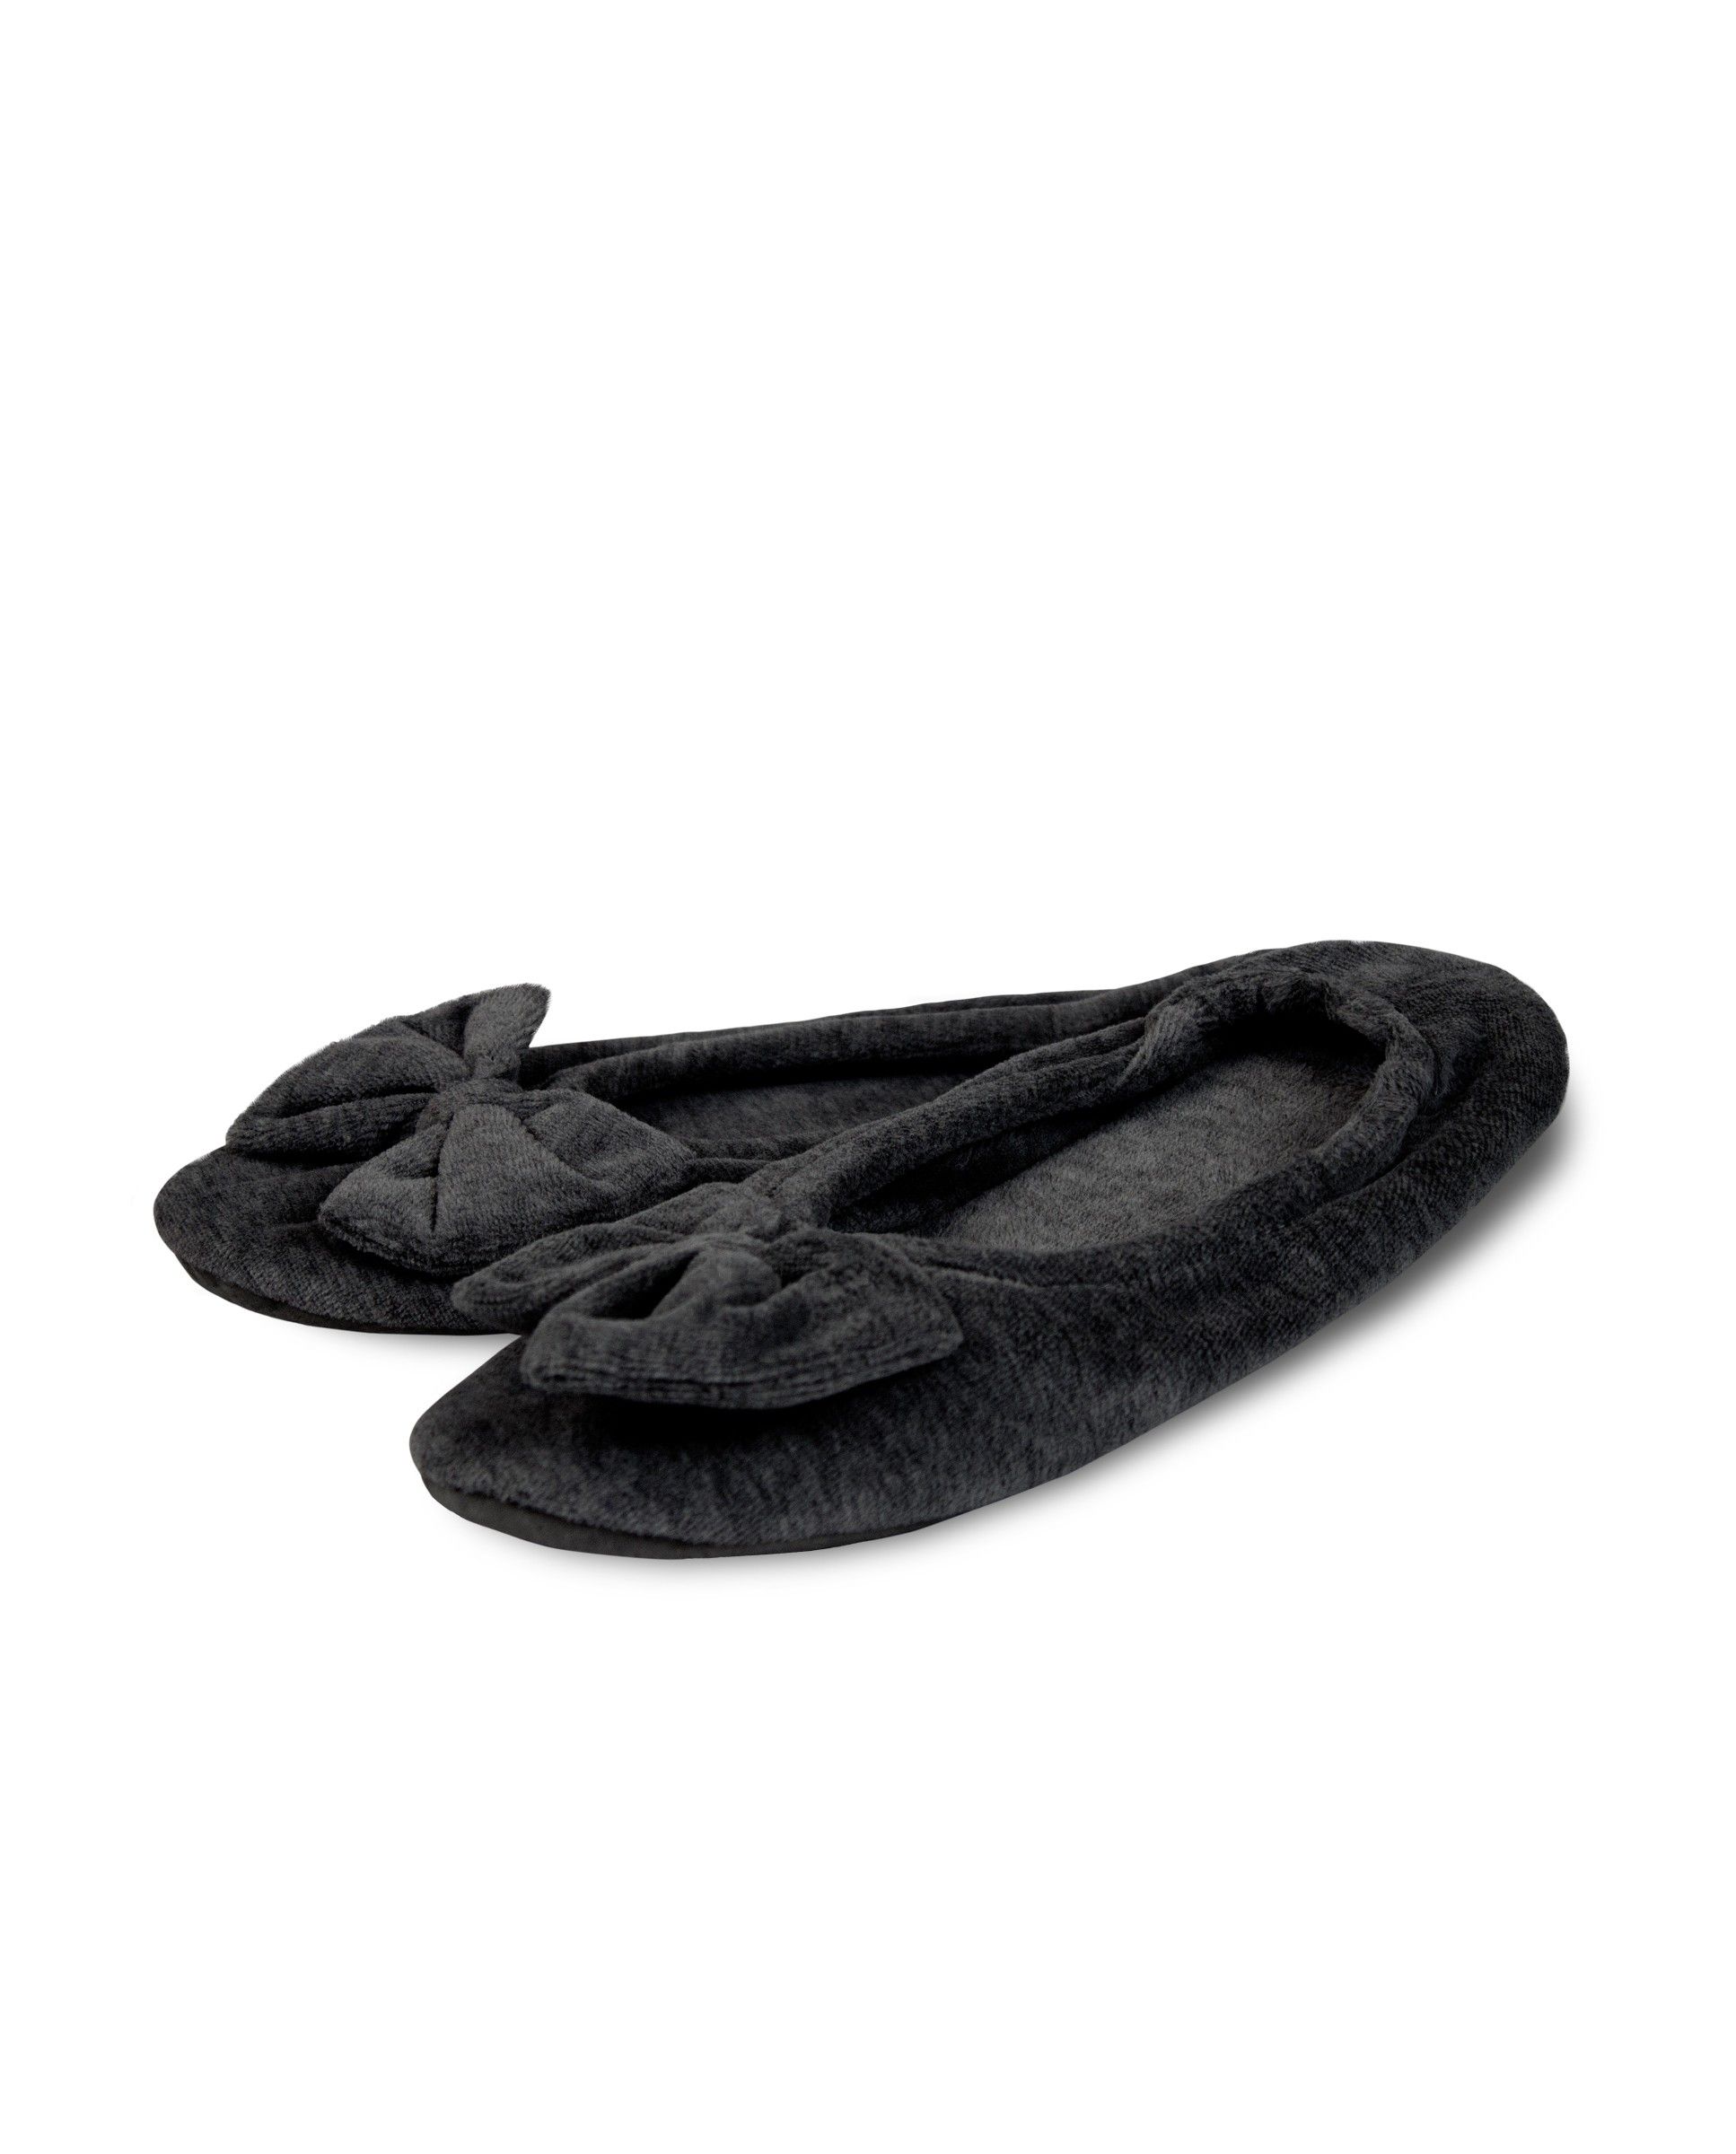 A pair of black velvet slippers on a white background